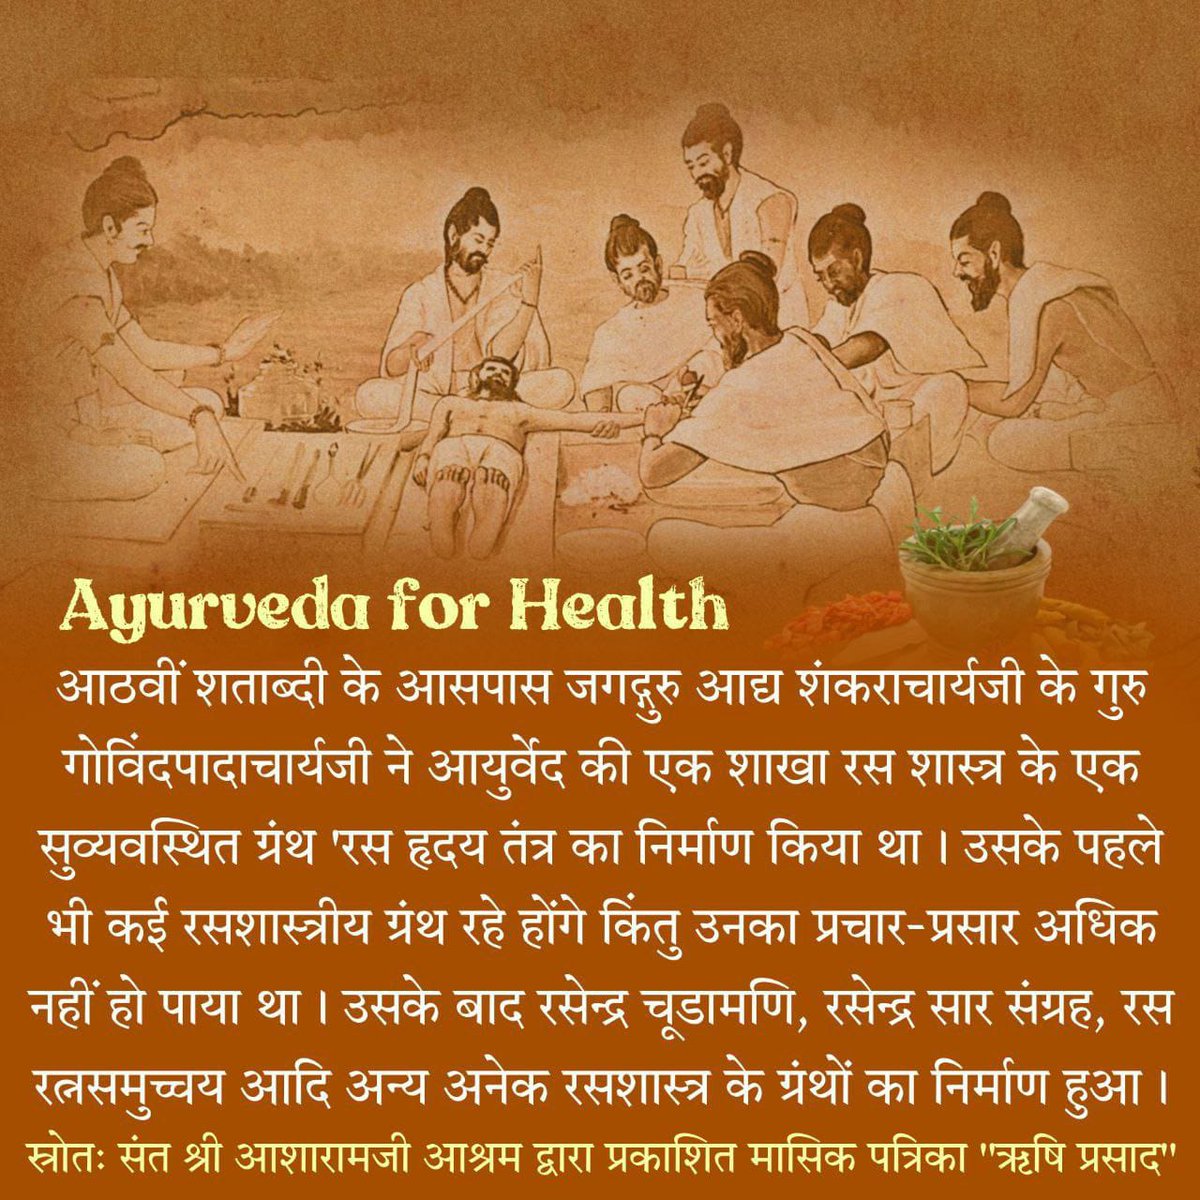 #आयुर्वेदामृत Wellness Journey व Healthy Living हेतु Sant Shri Asharamji Bapu कहते है आयुर्वेद के नियमानुसार देह में त्रिदोष के प्रकोपित होने से अनेक संक्रमण, उदर रोग, त्वचा रोग एवं मधुमेह, यकृत रोग पनपने लगते हैं। अतः स्वस्थ्य रहने हेतु सर्वप्रथम त्रिदोष की चिकित्सा जरूरी है❗